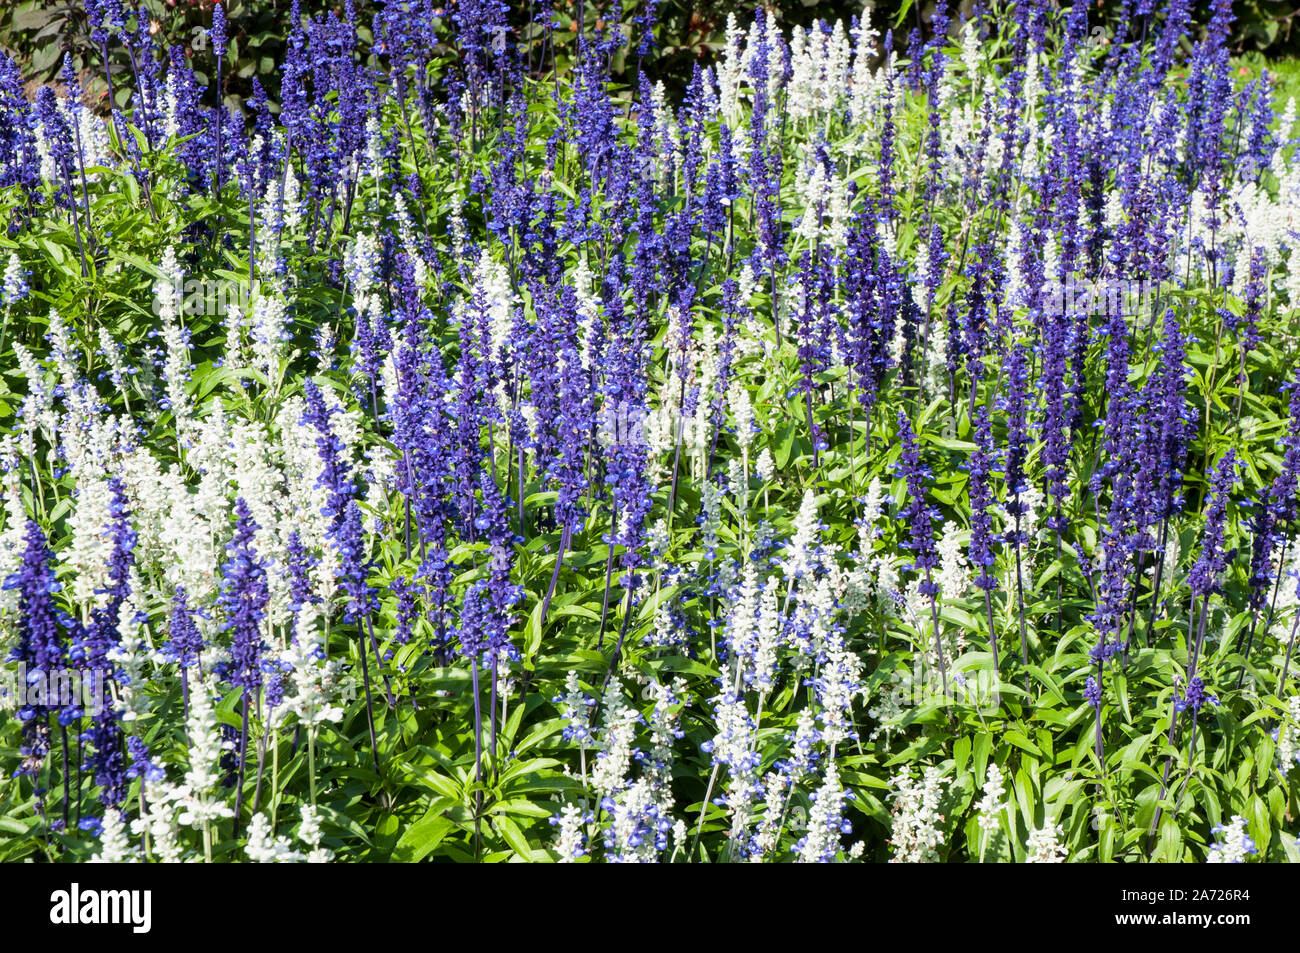 Un lit de fleur de la salvia farinaceae strates. Fleurs bleu et blanc sur une plante vivace mais généralement cultivée comme annuelle floraison à partir de l'été jusqu'à l'automne. Banque D'Images